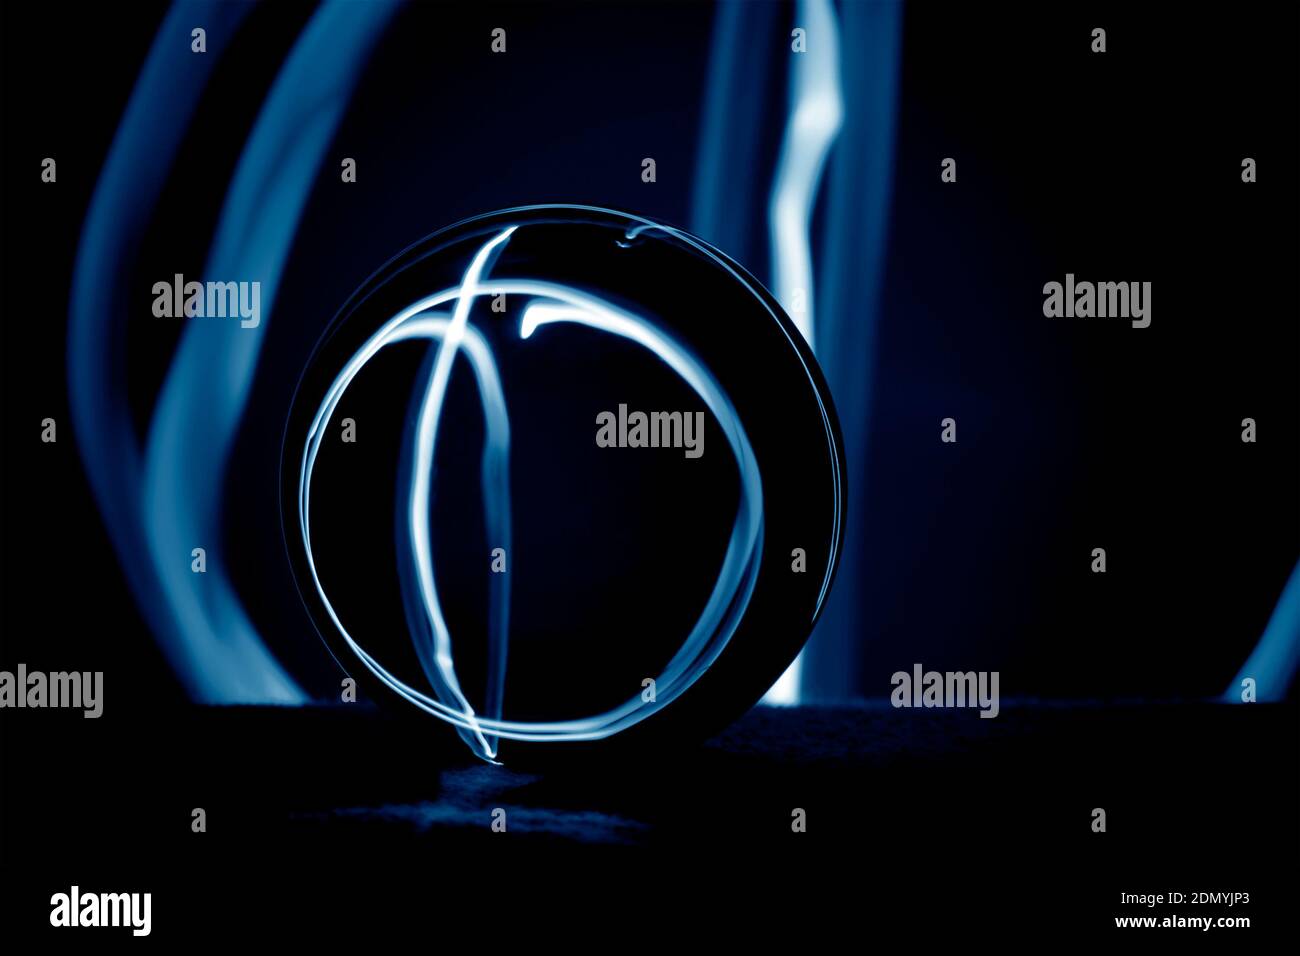 Composición abstracta con una bola de cristal en la oscuridad. Foto de stock